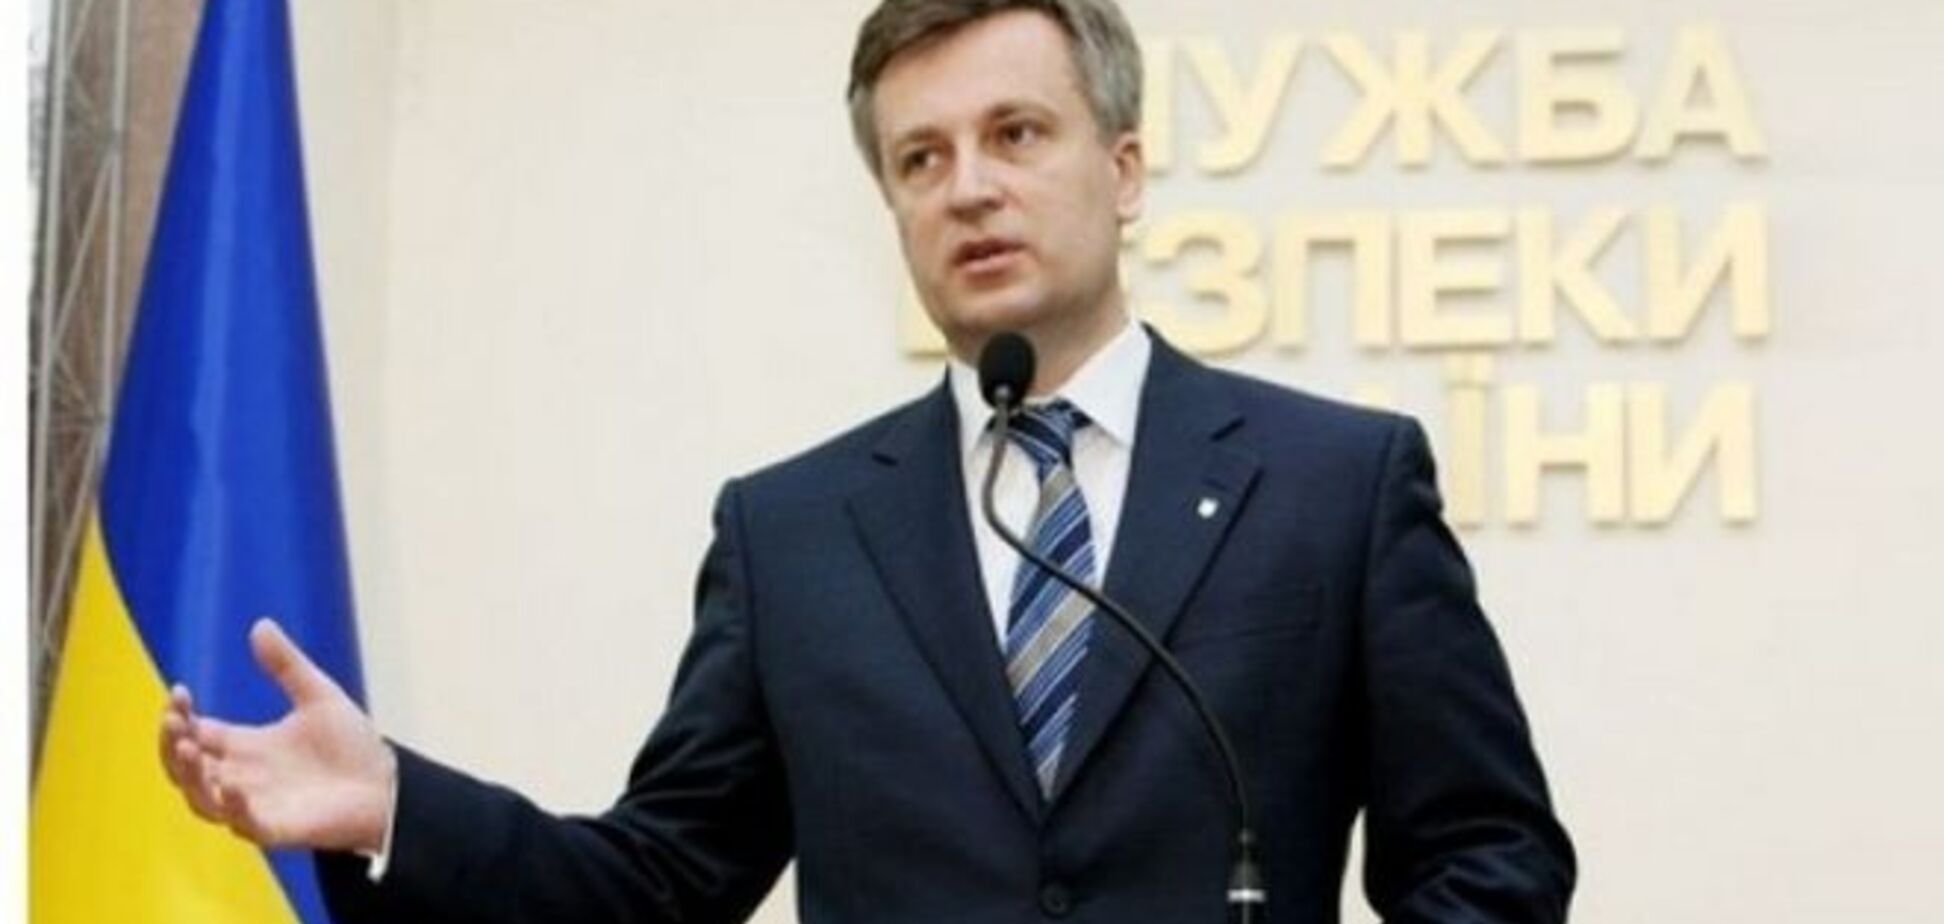 От Наливайченко потребовали извиниться перед Коломойским или уйти в отставку